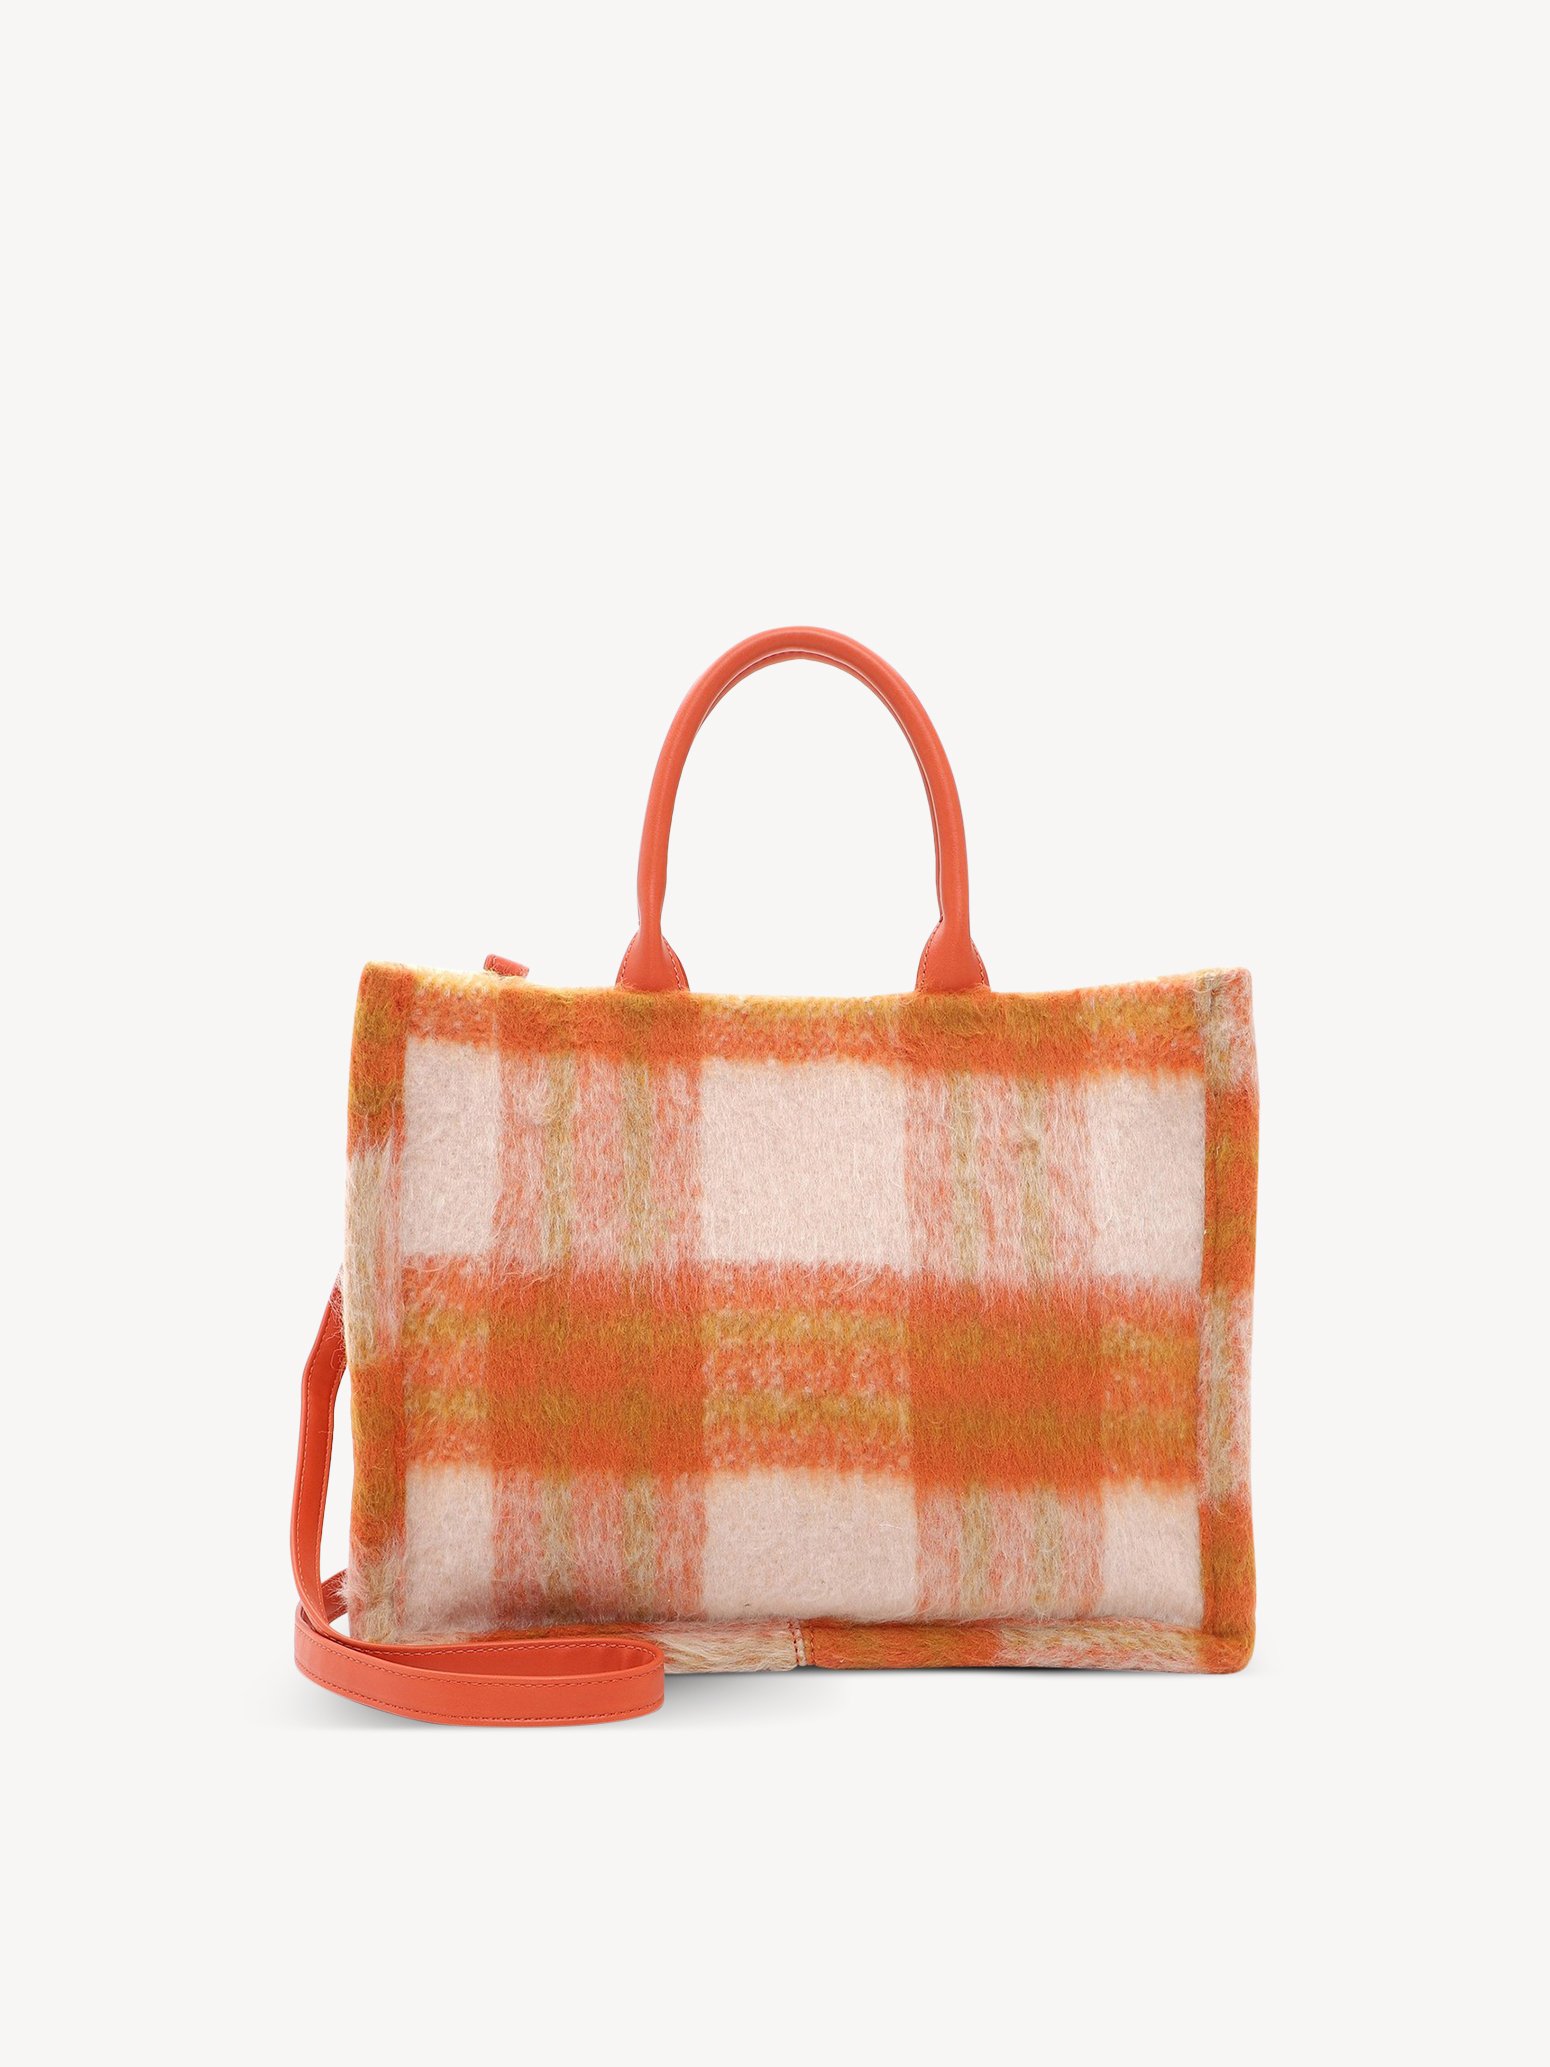 Τσάντα για ψώνια - πορτοκαλί